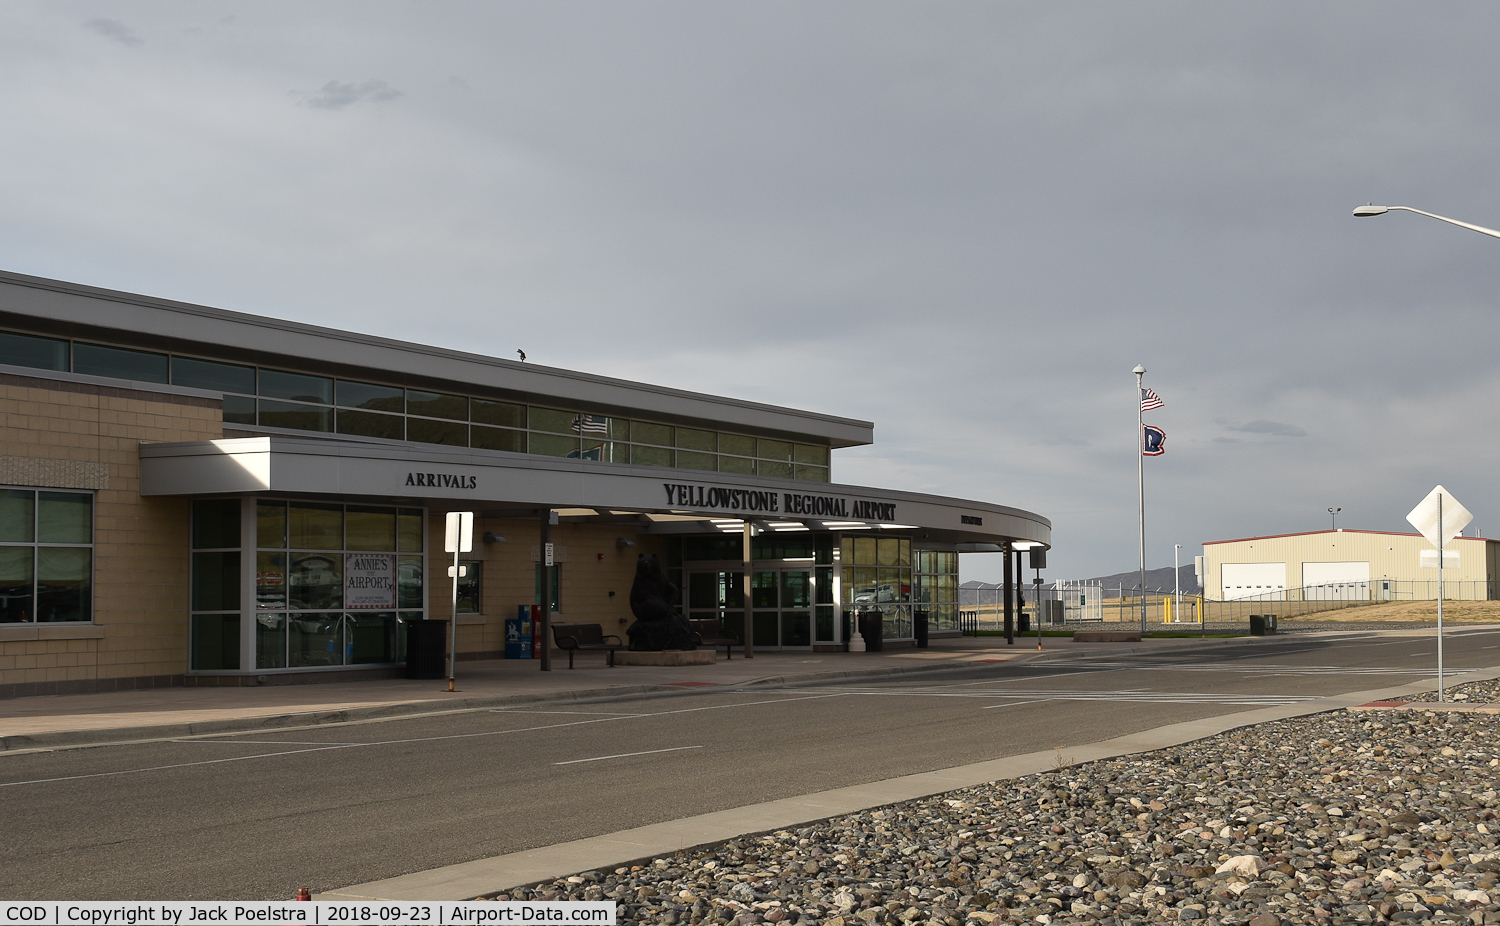 Yellowstone Regional Airport (COD) - Passenger terminal of Yellowstone reg. airport, Cody WY